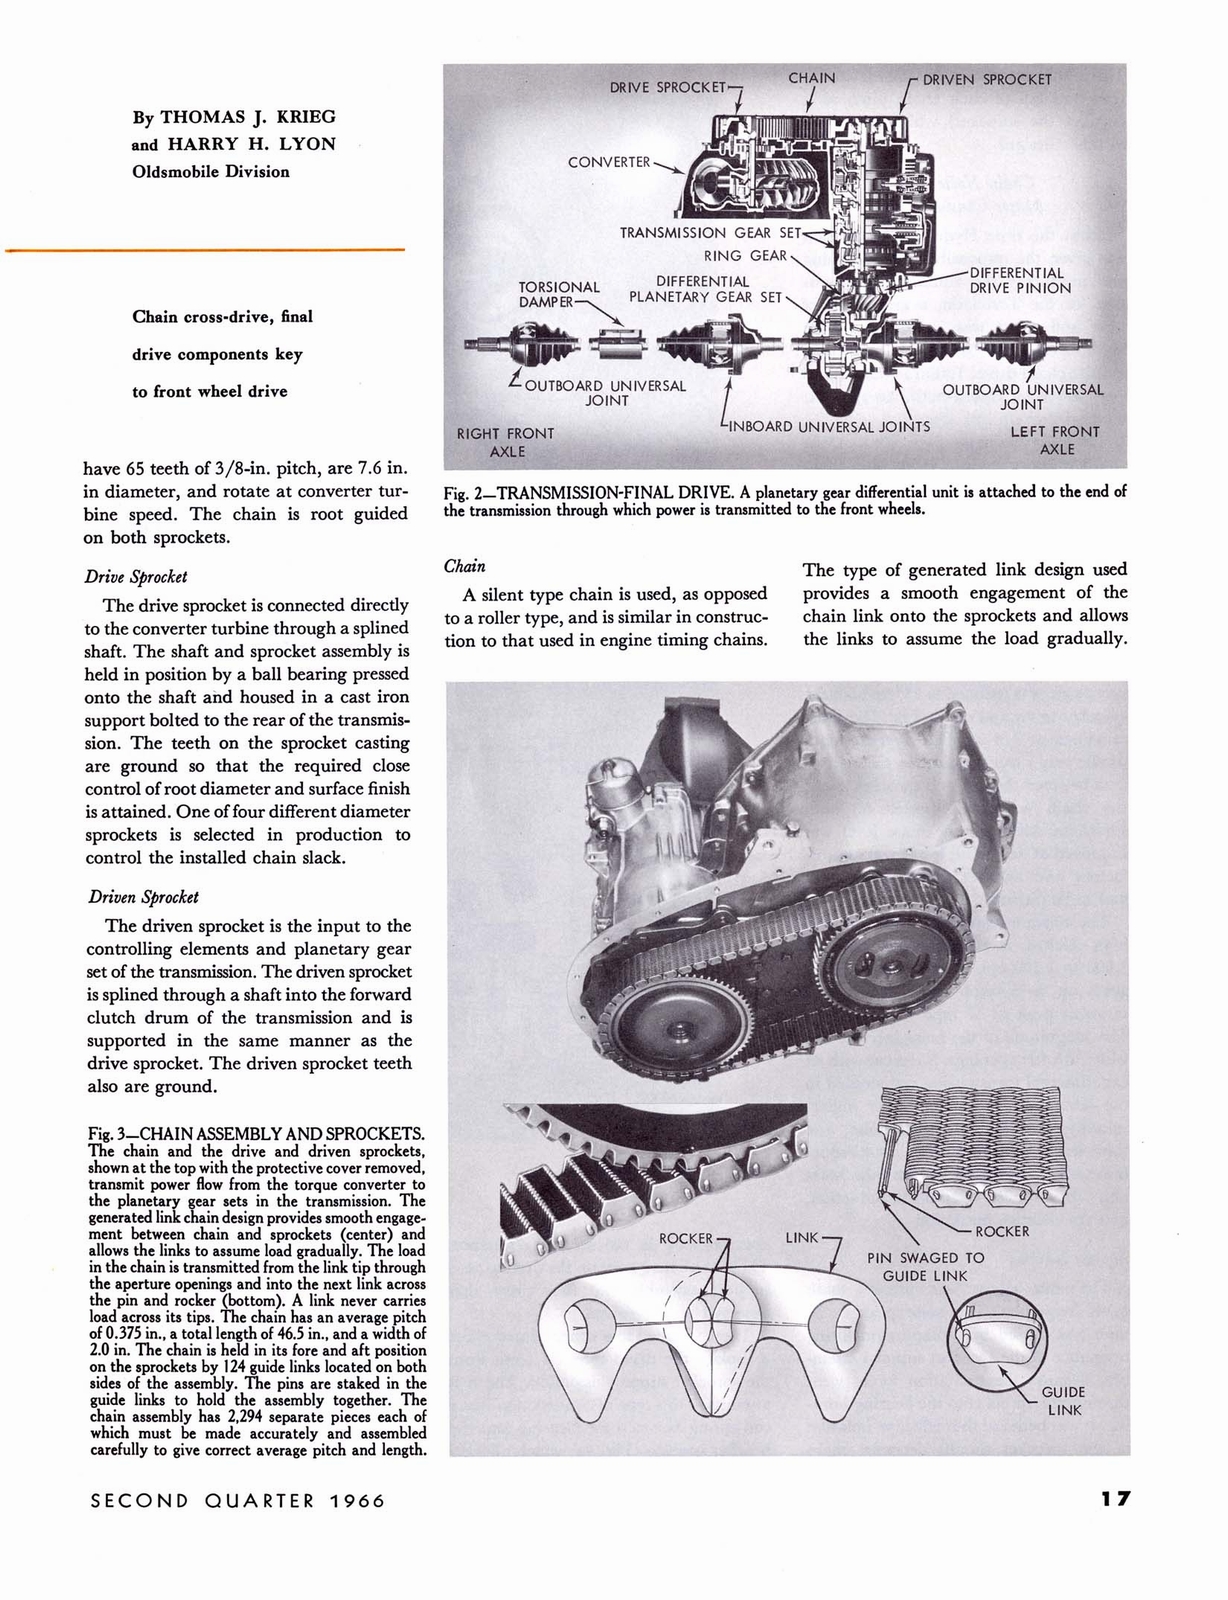 n_1966 GM Eng Journal Qtr2-17.jpg